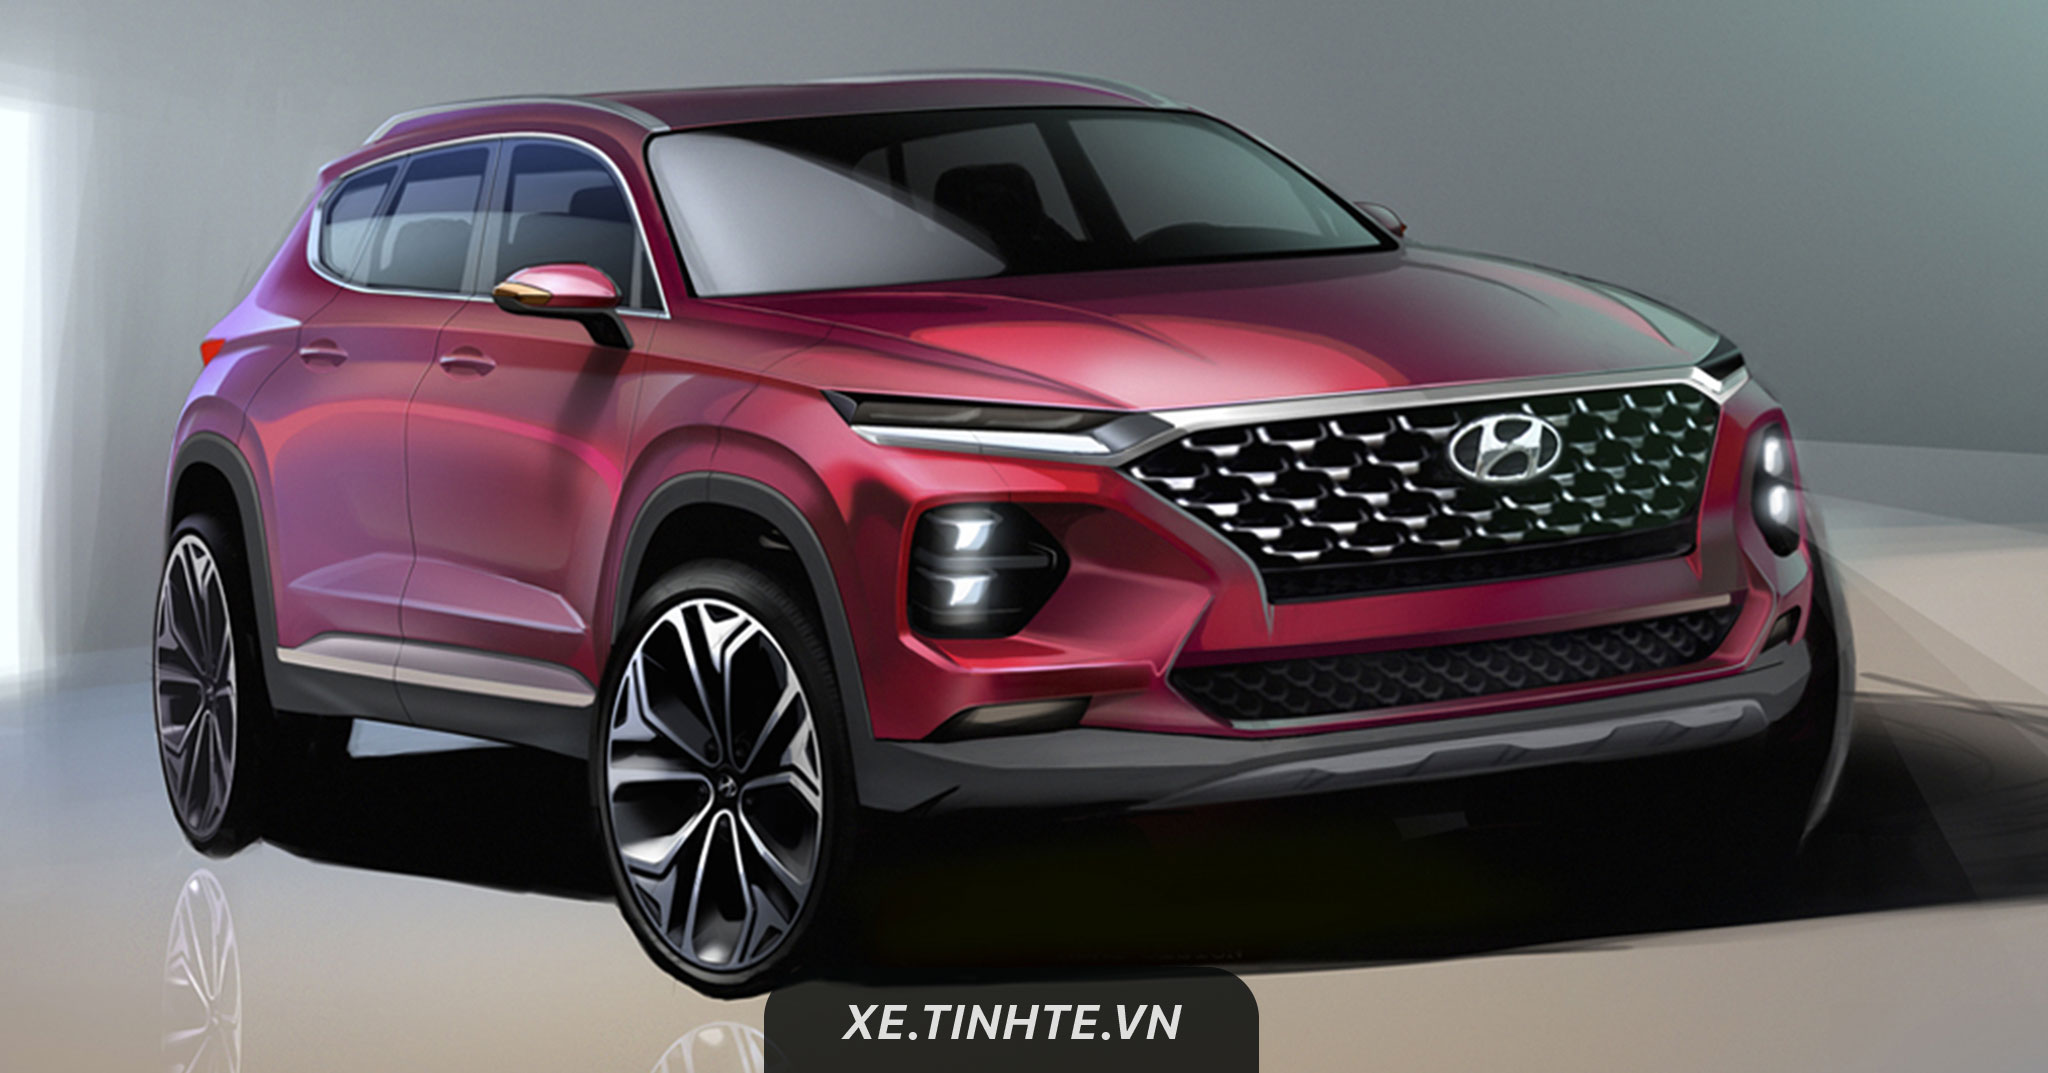 Hyundai tiết lộ thiết kế mới cho mẫu xe Santa Fe sắp ra mắt vào tháng 3/2018